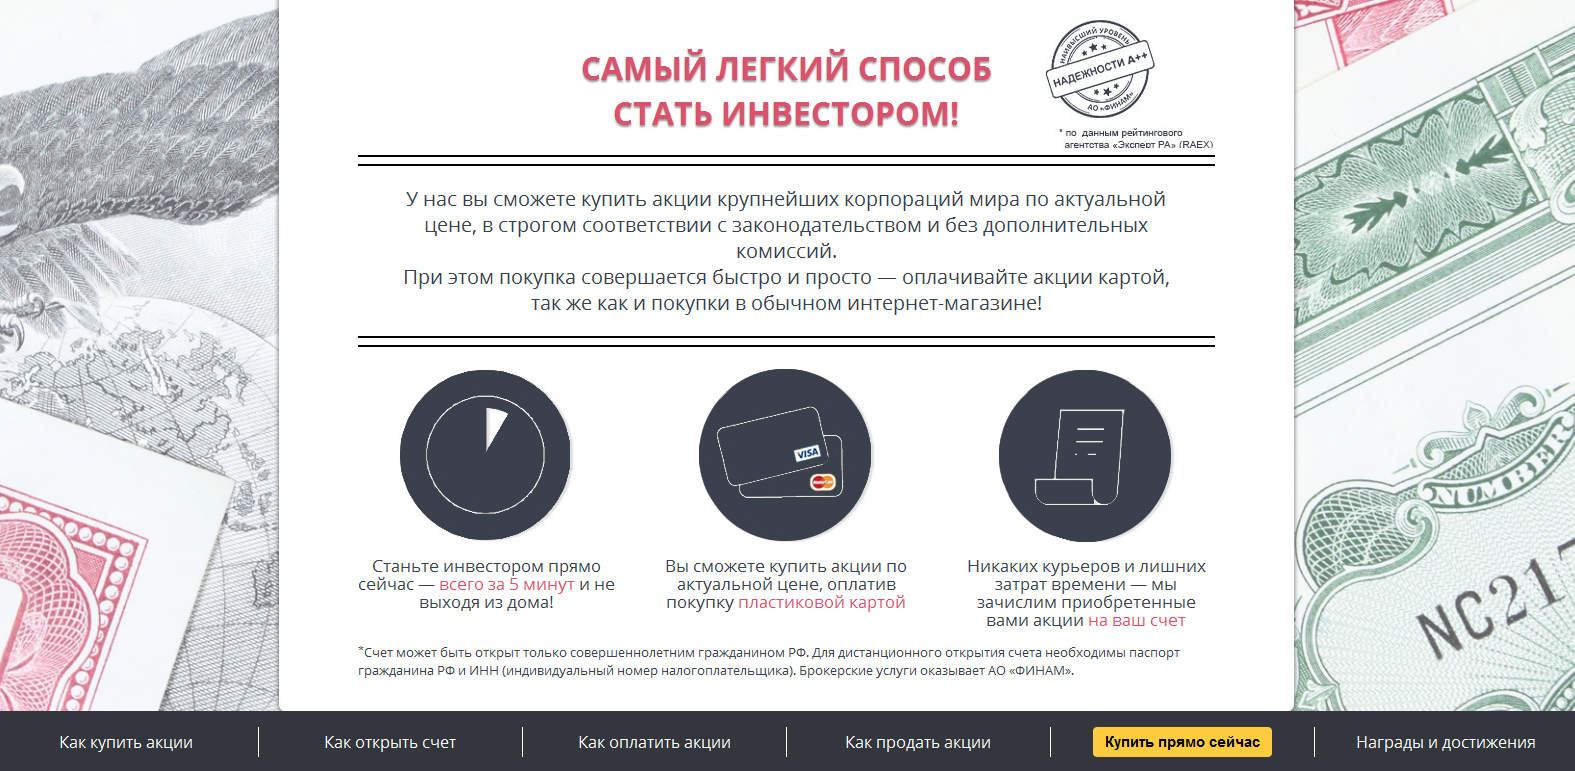 Форекс-брокеры с лицензией ЦБ РФ, выданной в 2016-м году